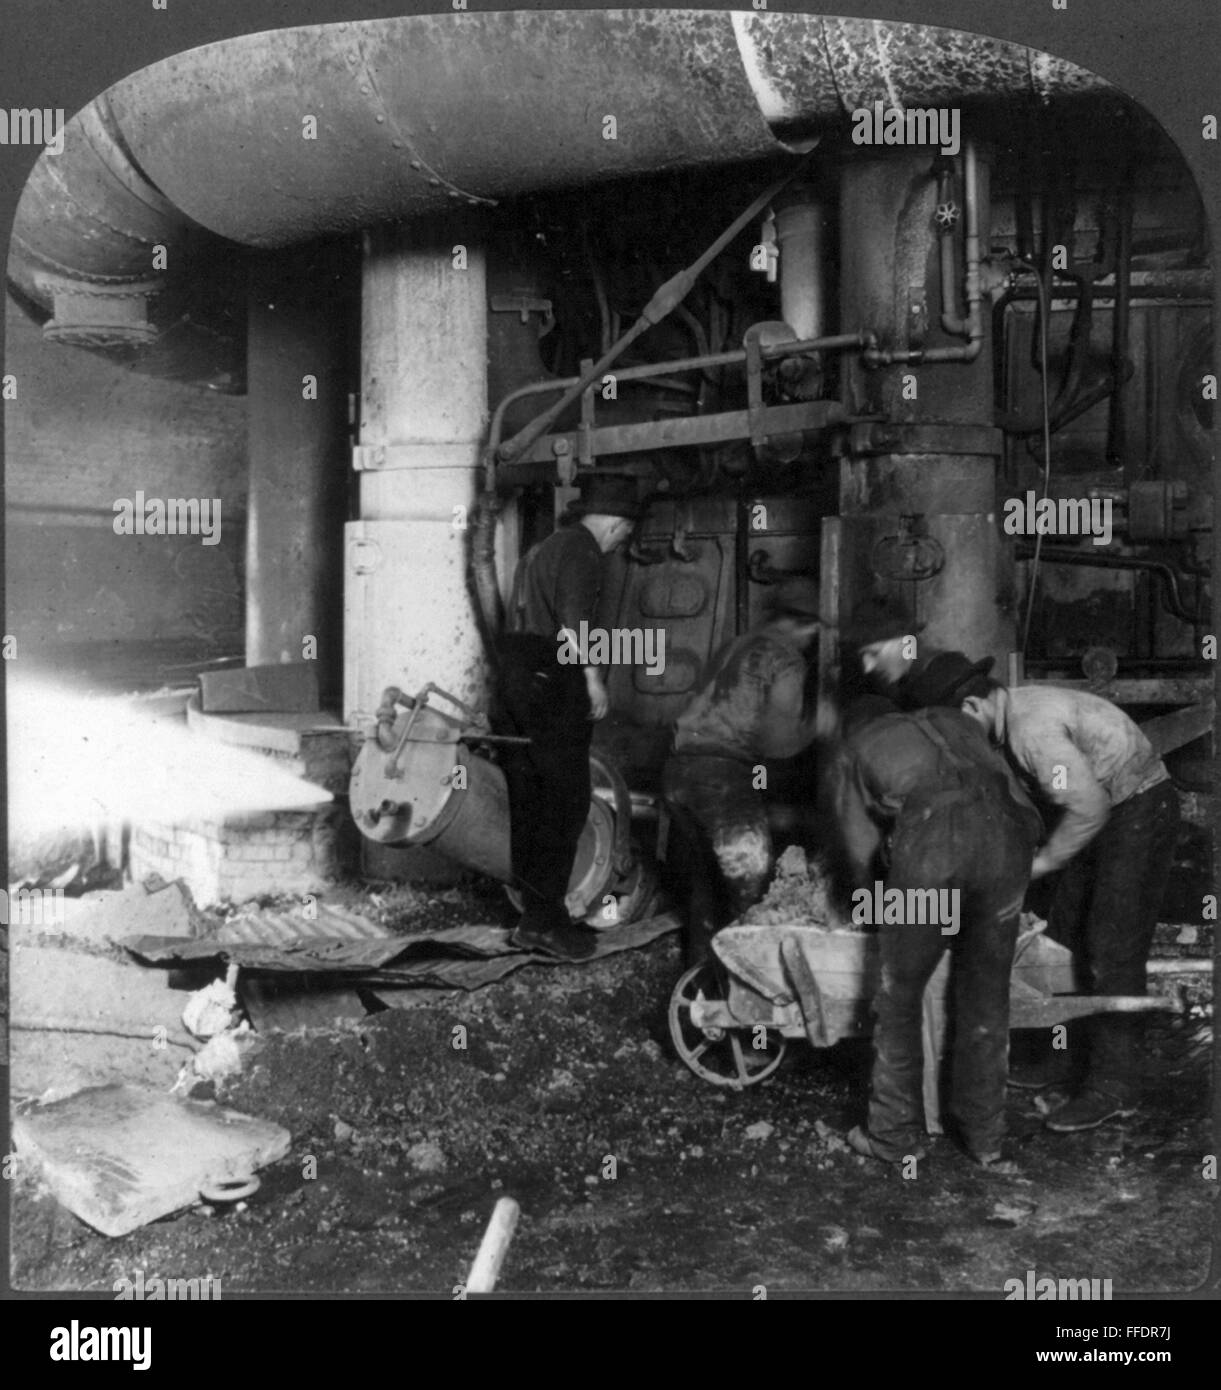 Les travailleurs de l'acier, c1907. Un nClosing /fourneau après avoir appelé l'acier fondu à partir de cela, dans une aciérie à Homestead, Florida, c1907. Banque D'Images